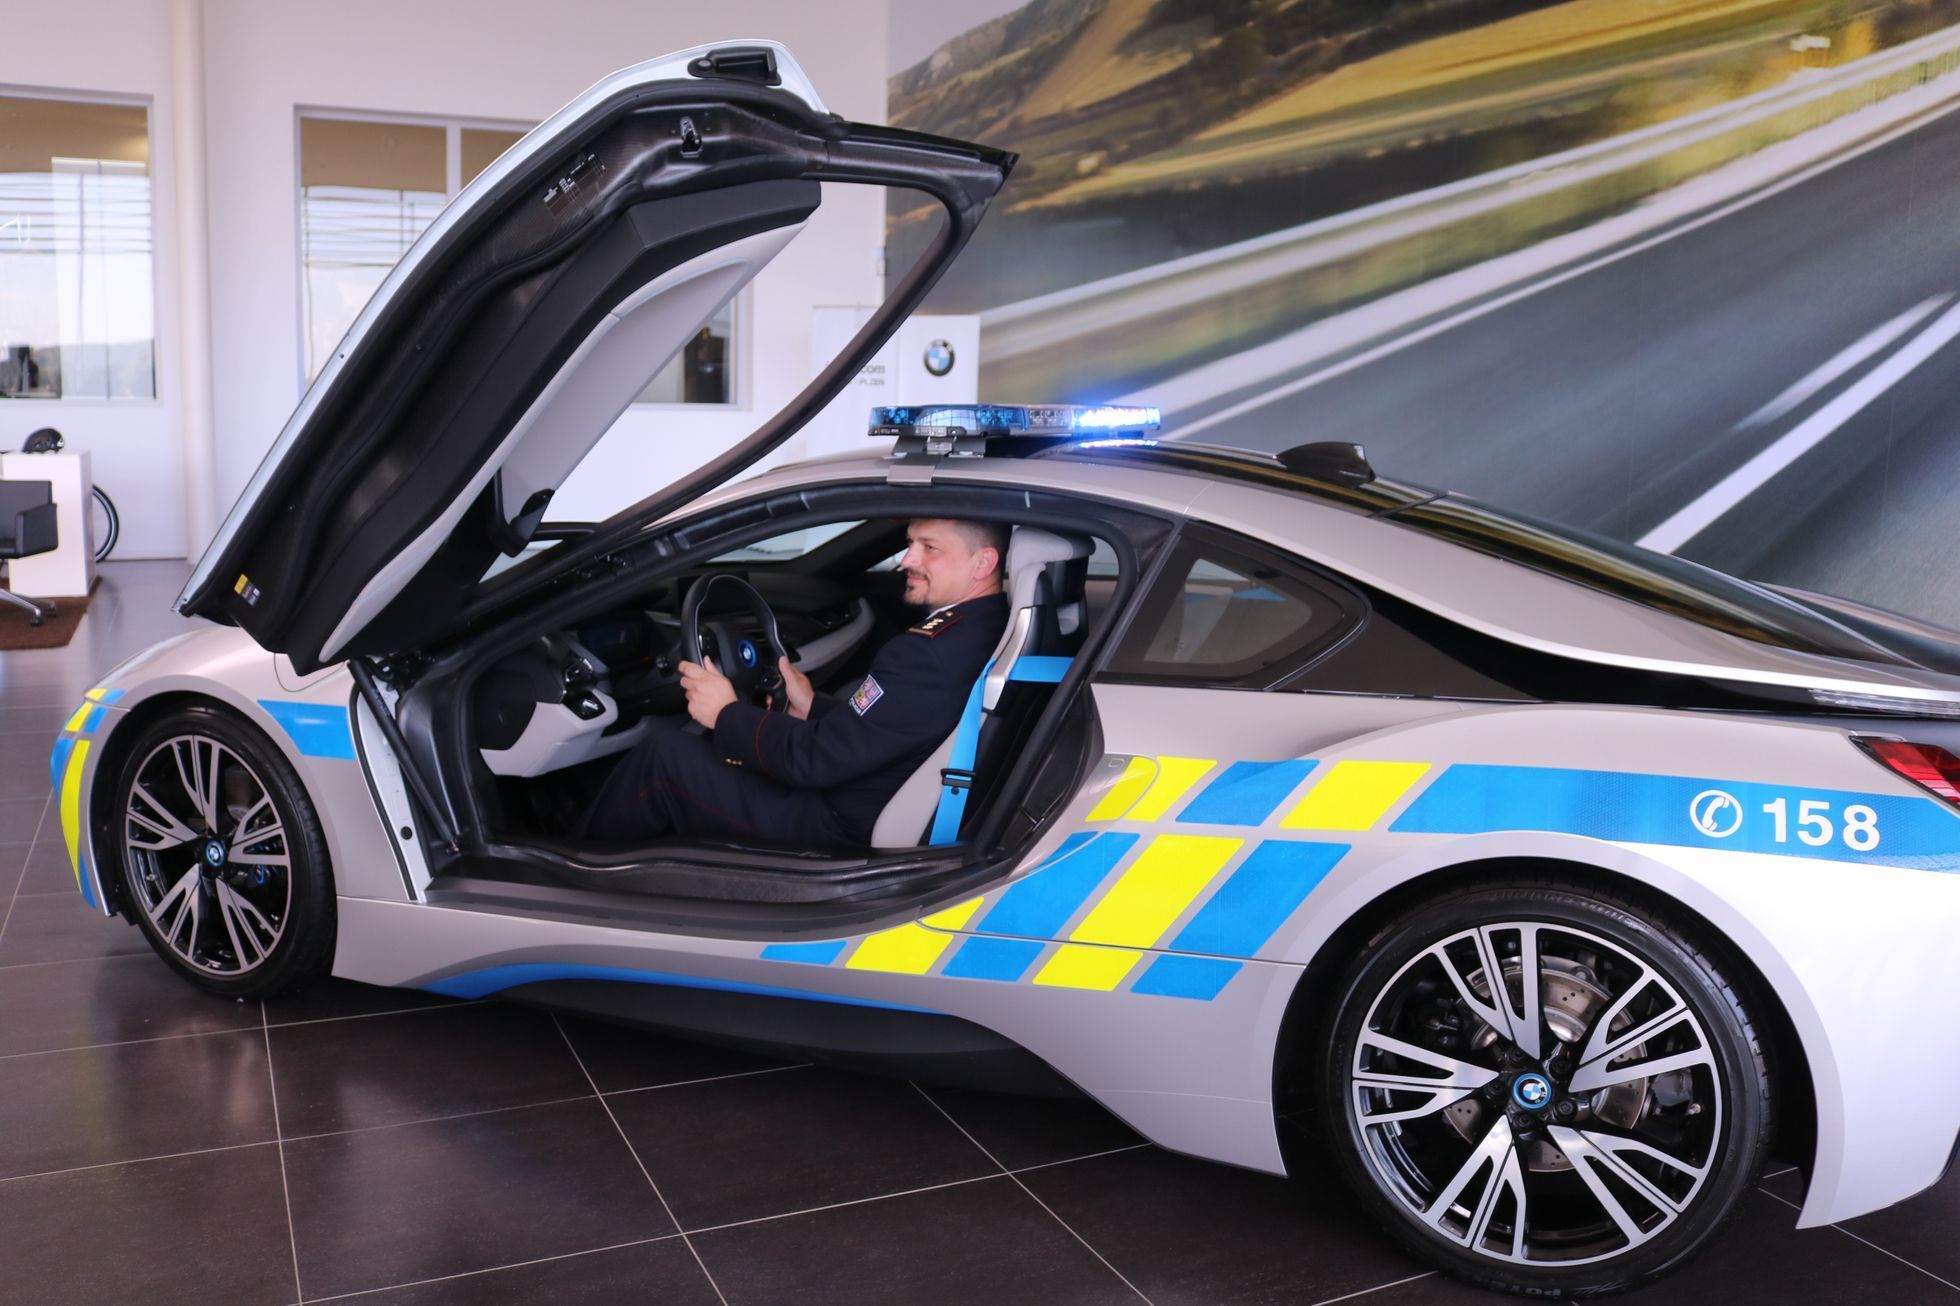 Policie si převzala BMW i8